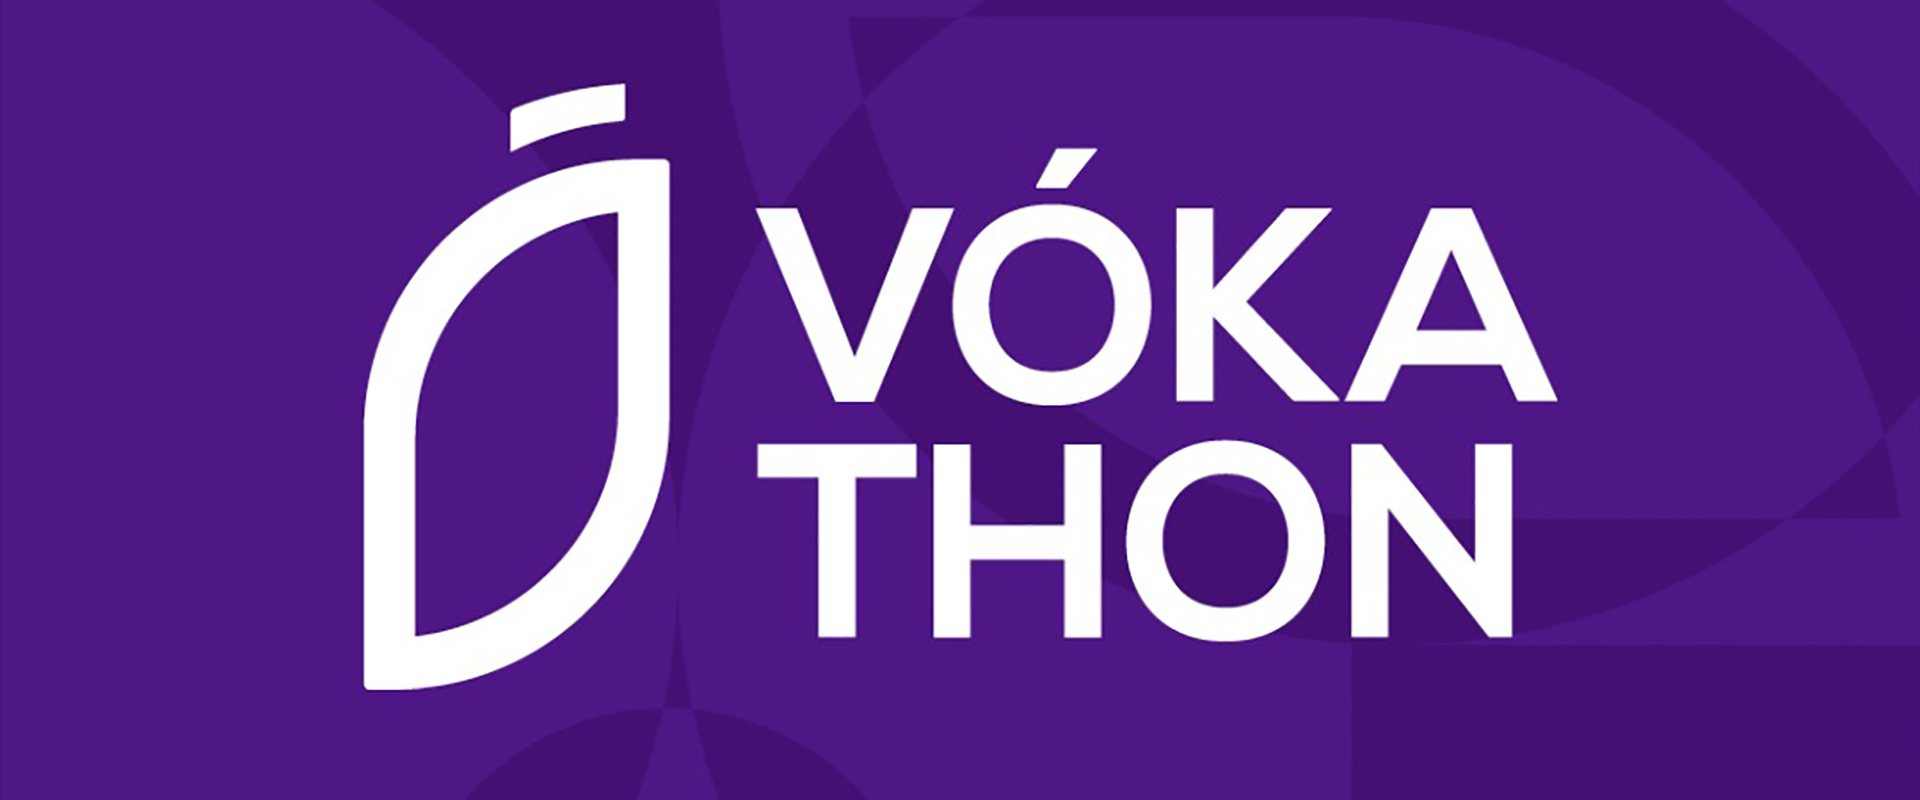 Centro de Inovação: Vóka terá primeira maratona de inovação